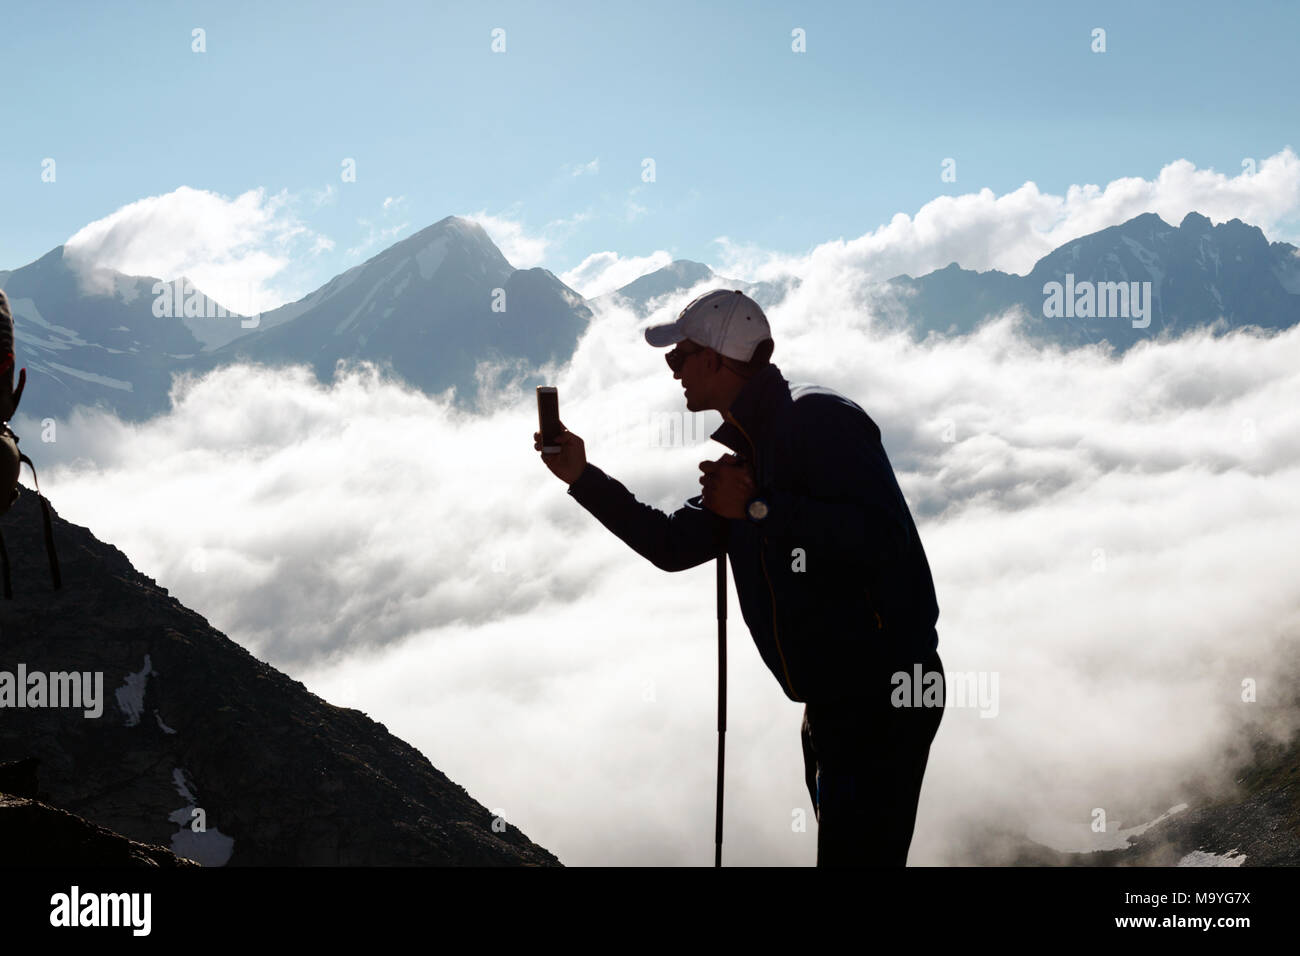 Hipster homme tire une vidéo d'un paysage de montagne avec des nuages sur un téléphone mobile, alors que l'article de fond contre les hauts sommets. L'homme est tak Banque D'Images